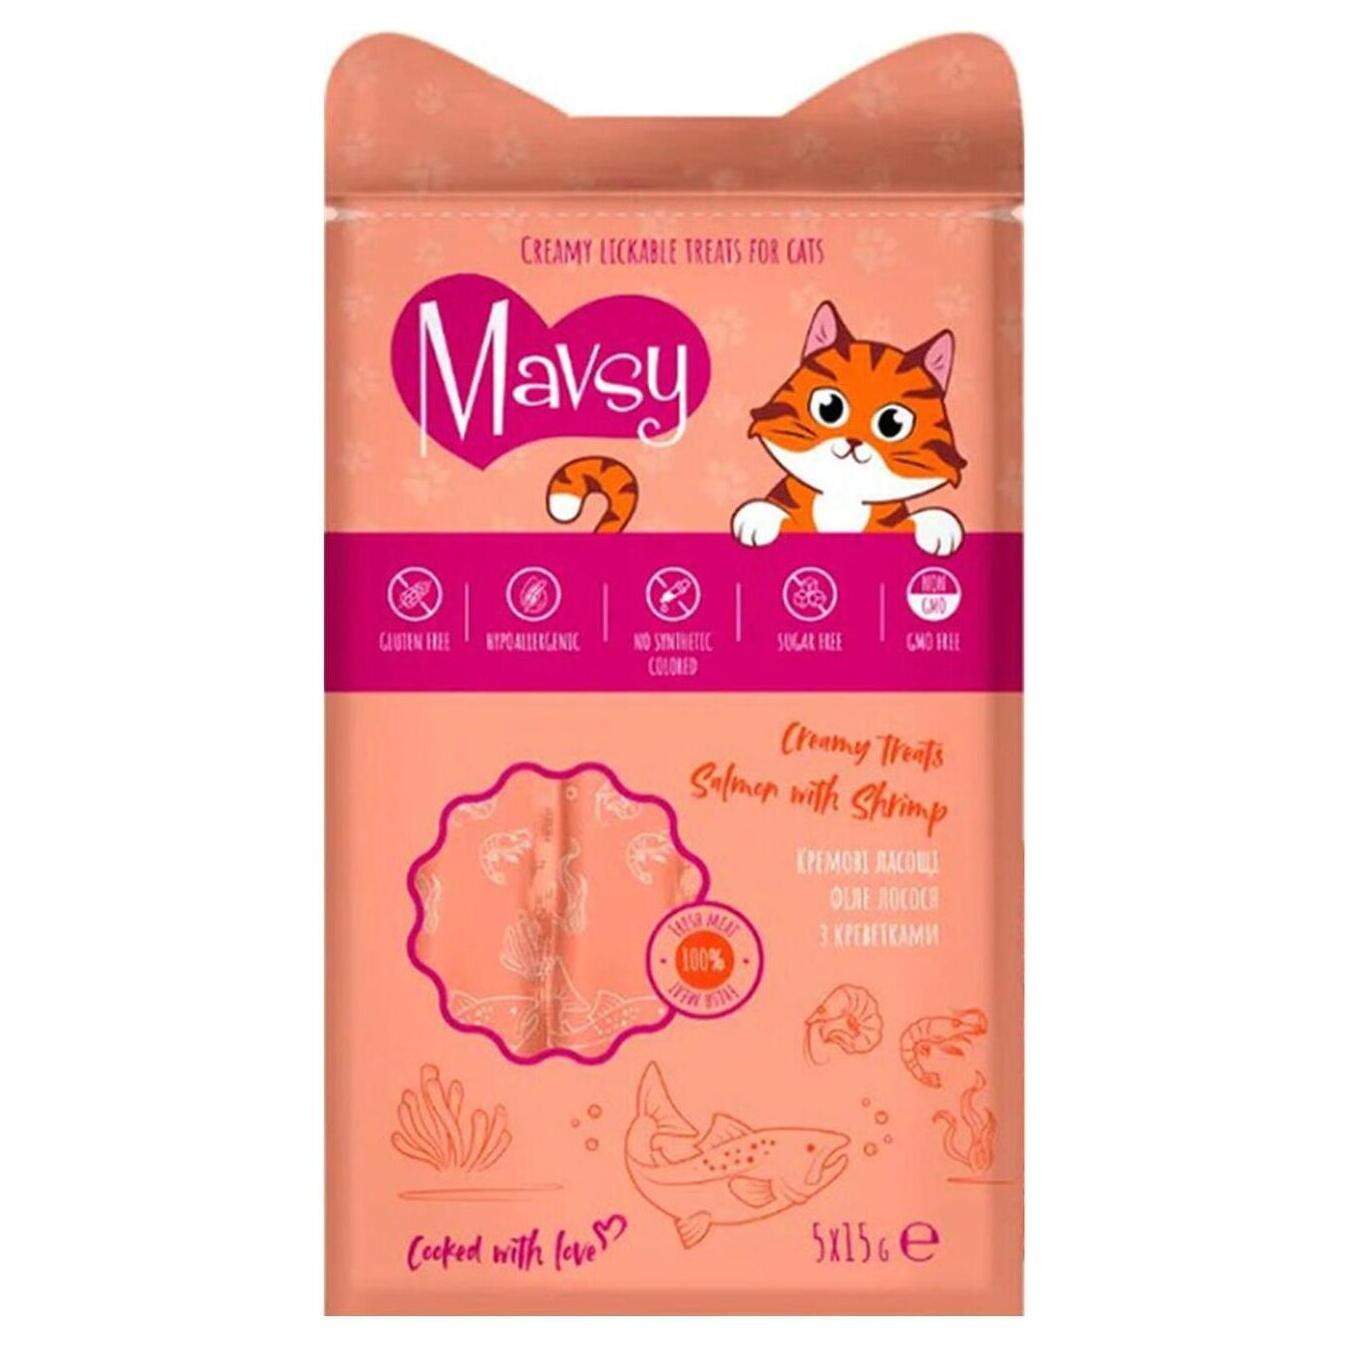 Mavsy cream treats for cats with salmon and shrimp 5x15g